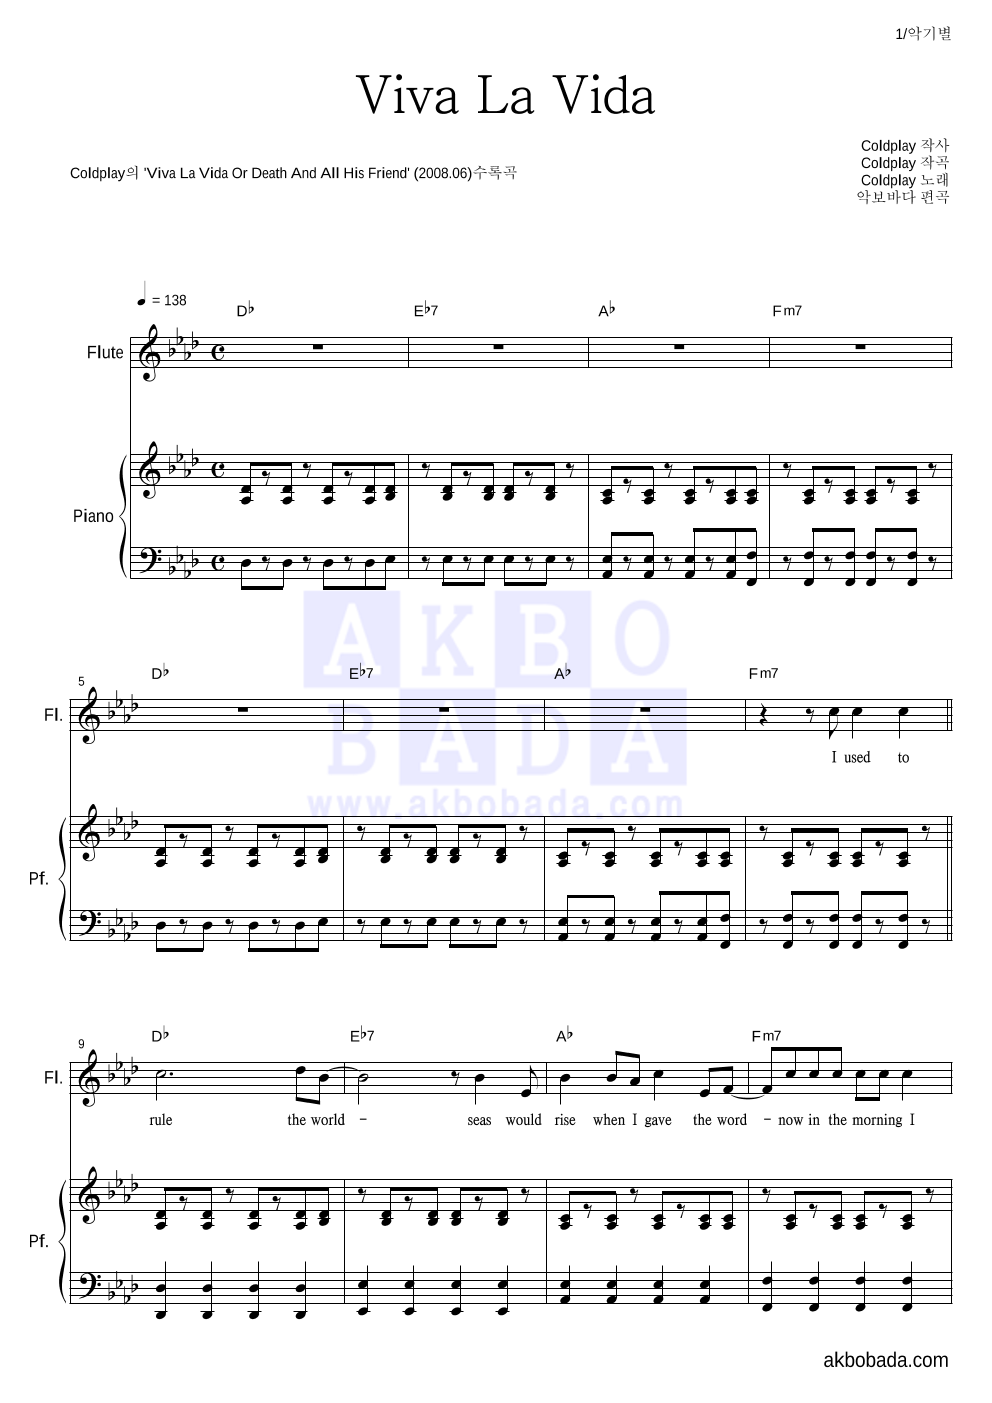 Coldplay - Viva La Vida 플룻&피아노 악보 